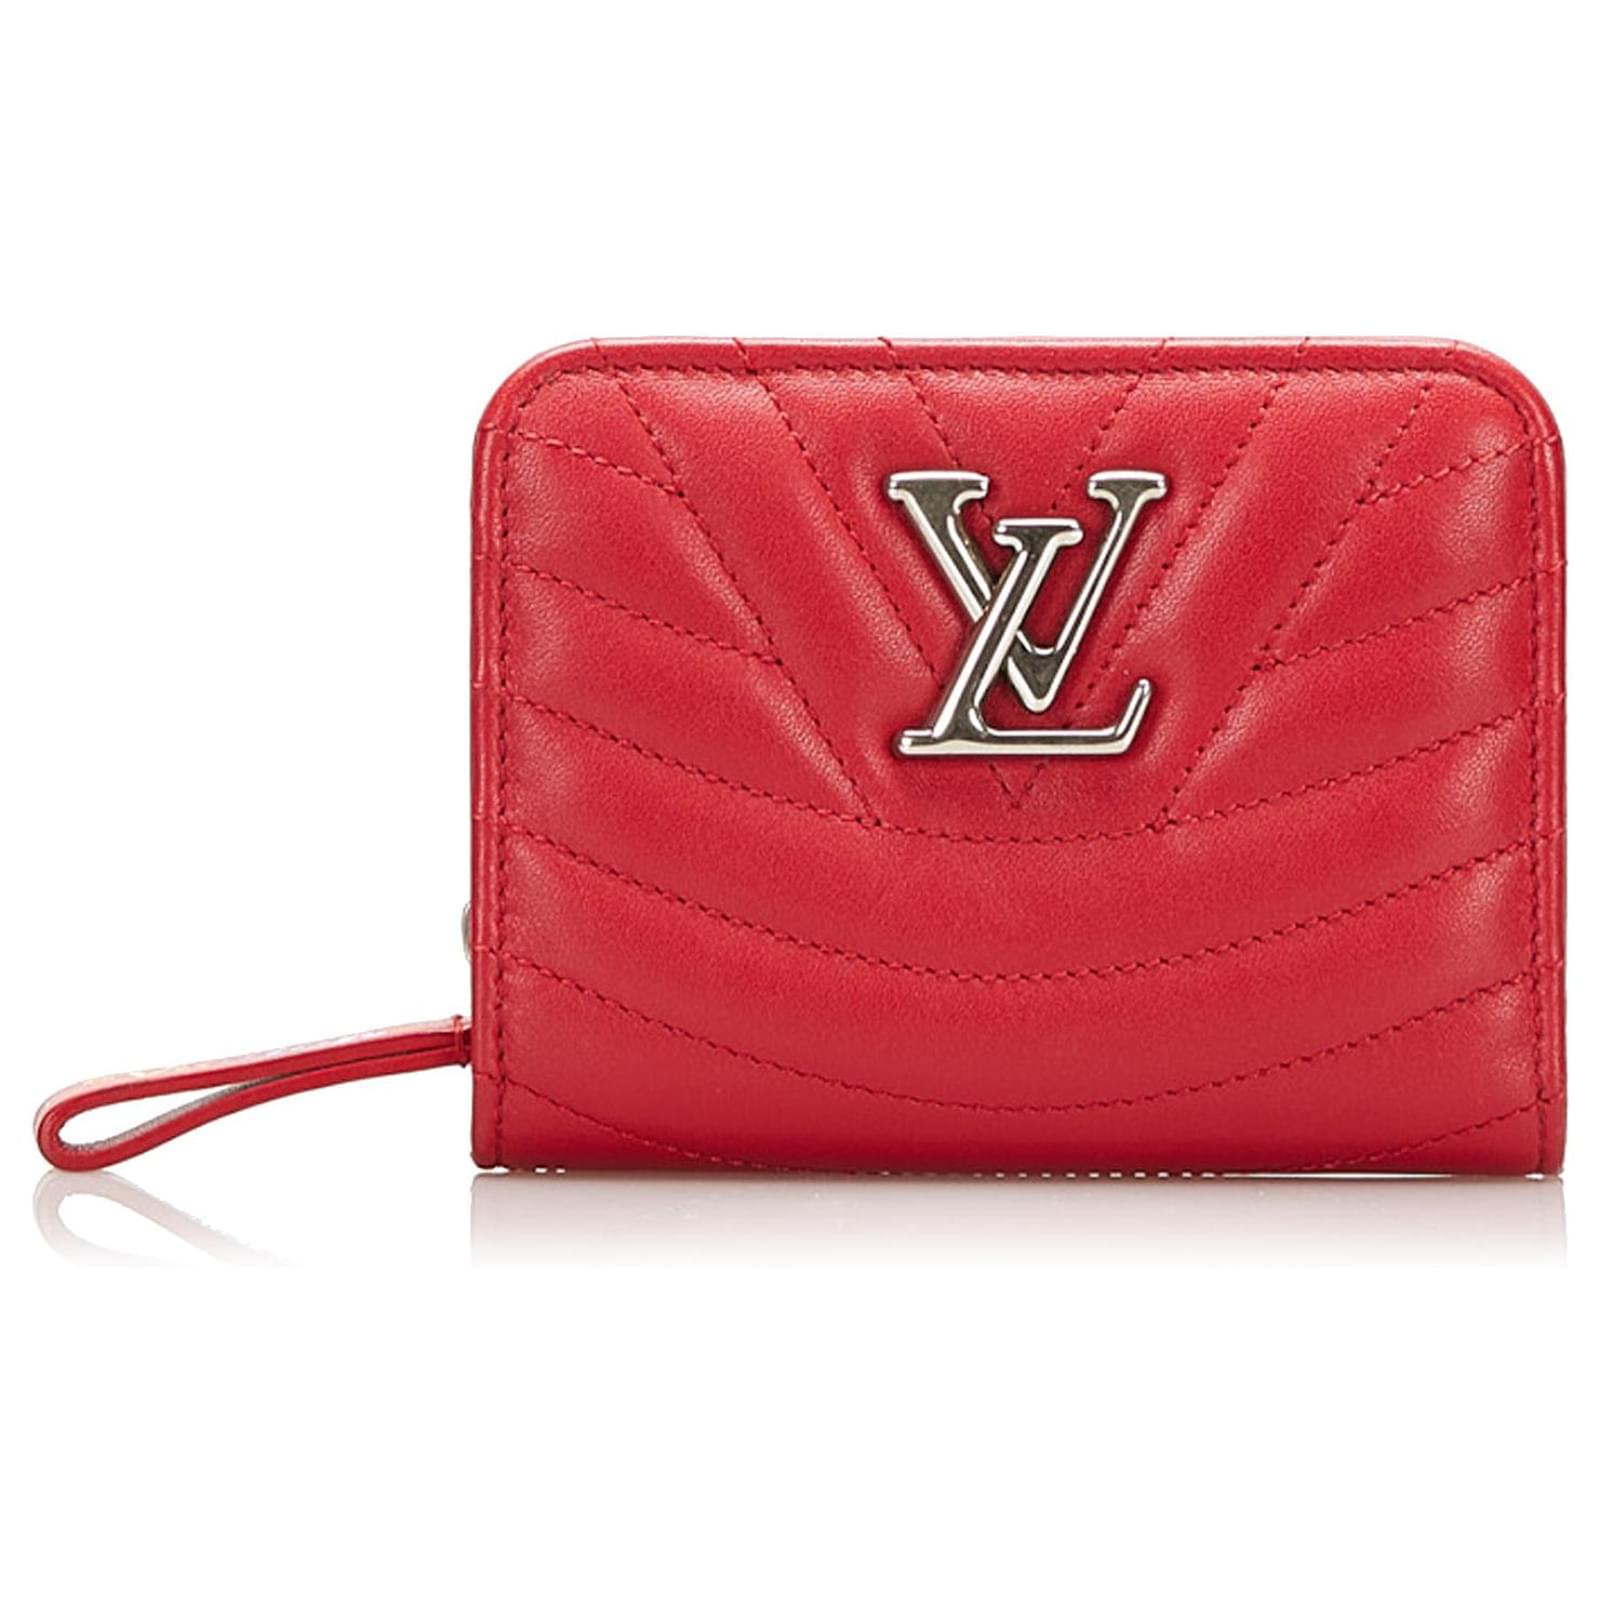 Cartera compacta New Wave roja de Louis Vuitton